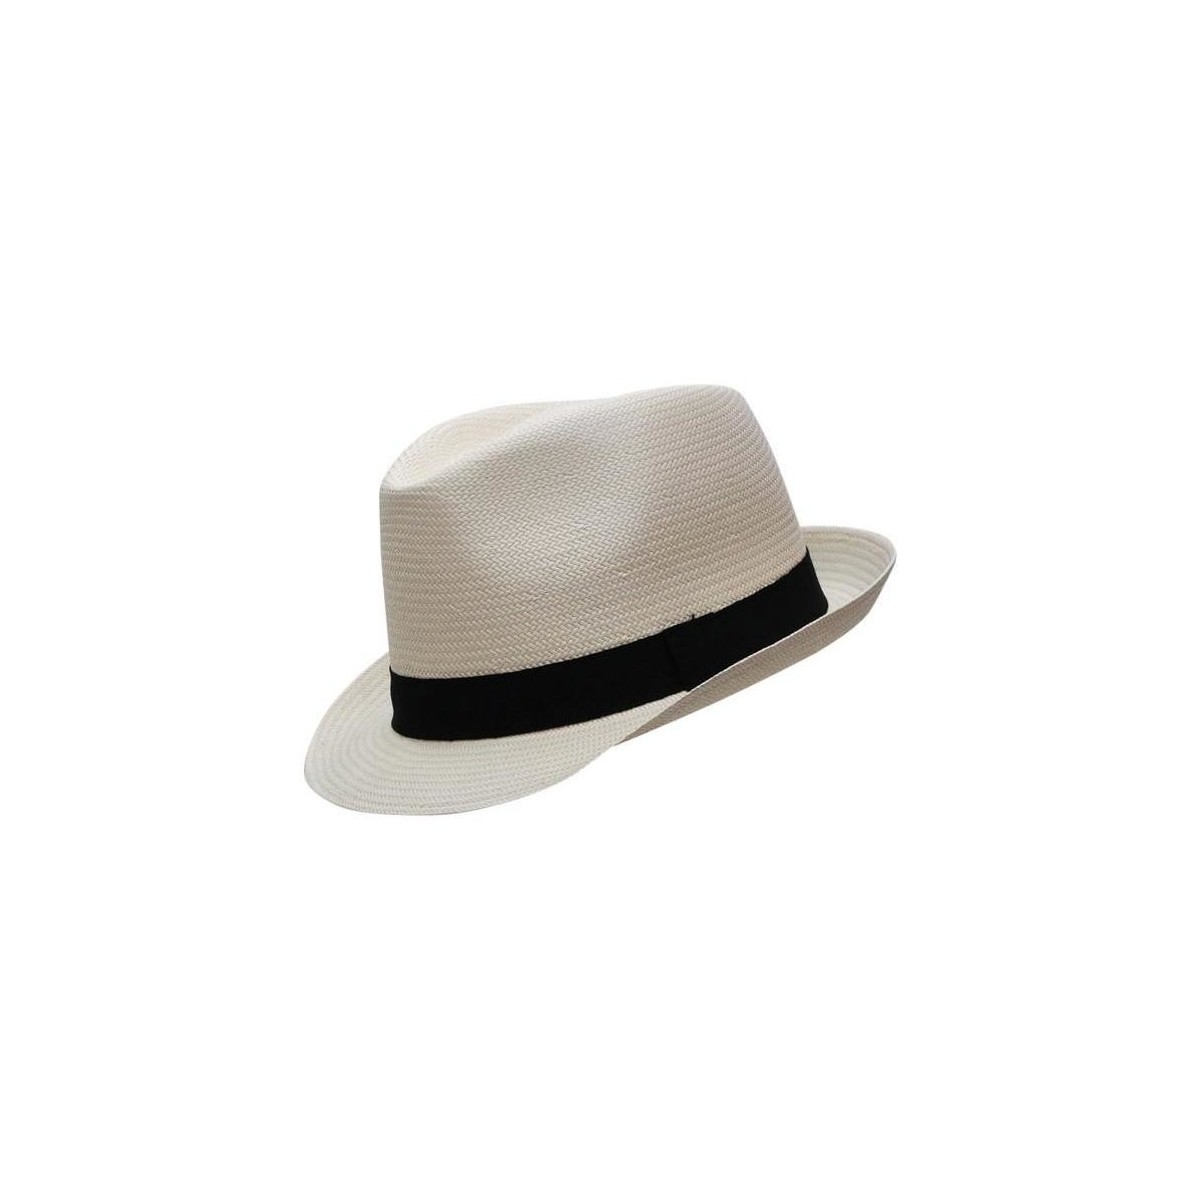 Chapeau Trilby panama véritable pliable T59 Chapeau-Tendance en coloris Blanc Femme Accessoires Chapeaux 